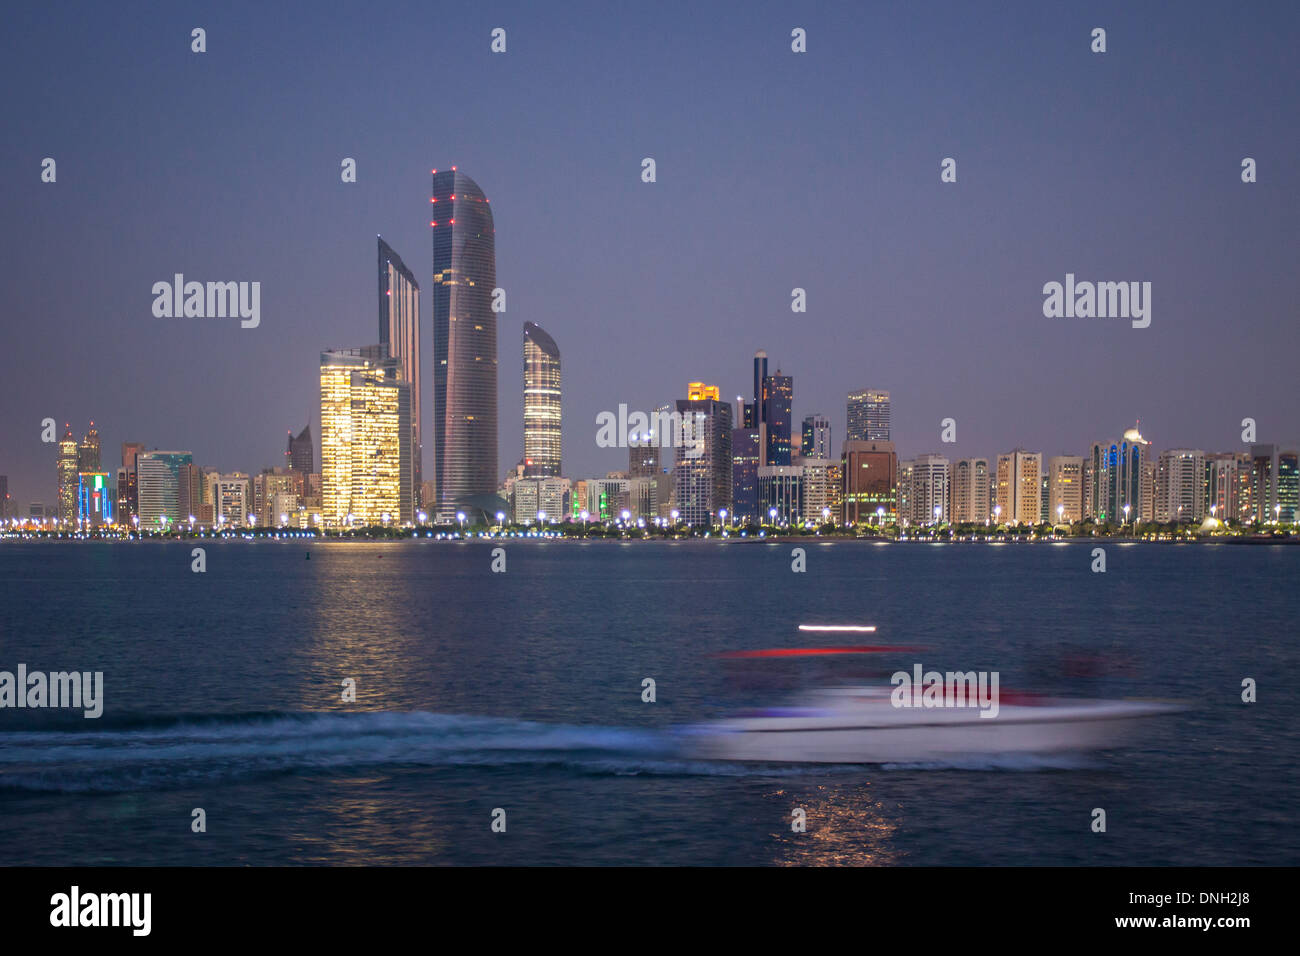 YACHT A VELA IN PARTE ANTERIORE dei grattacieli di ABU DHABI, Emirati arabi uniti, MEDIO ORIENTE Foto Stock